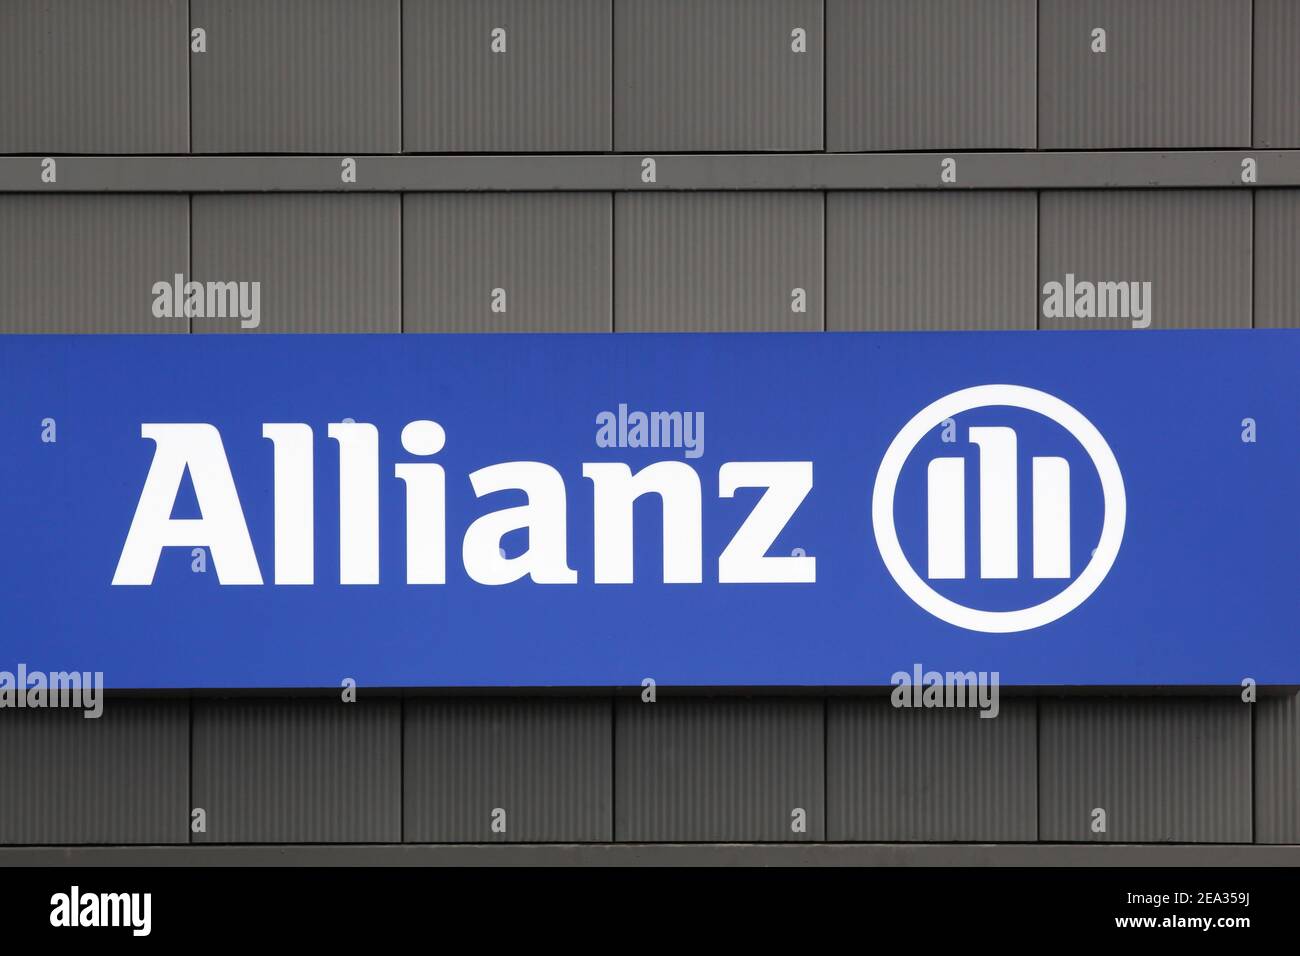 Bourg, France - 26 septembre 2020 : signe Allianz sur un mur. Allianz est une société européenne de services financiers dont le siège est situé à Munich, en Allemagne Banque D'Images